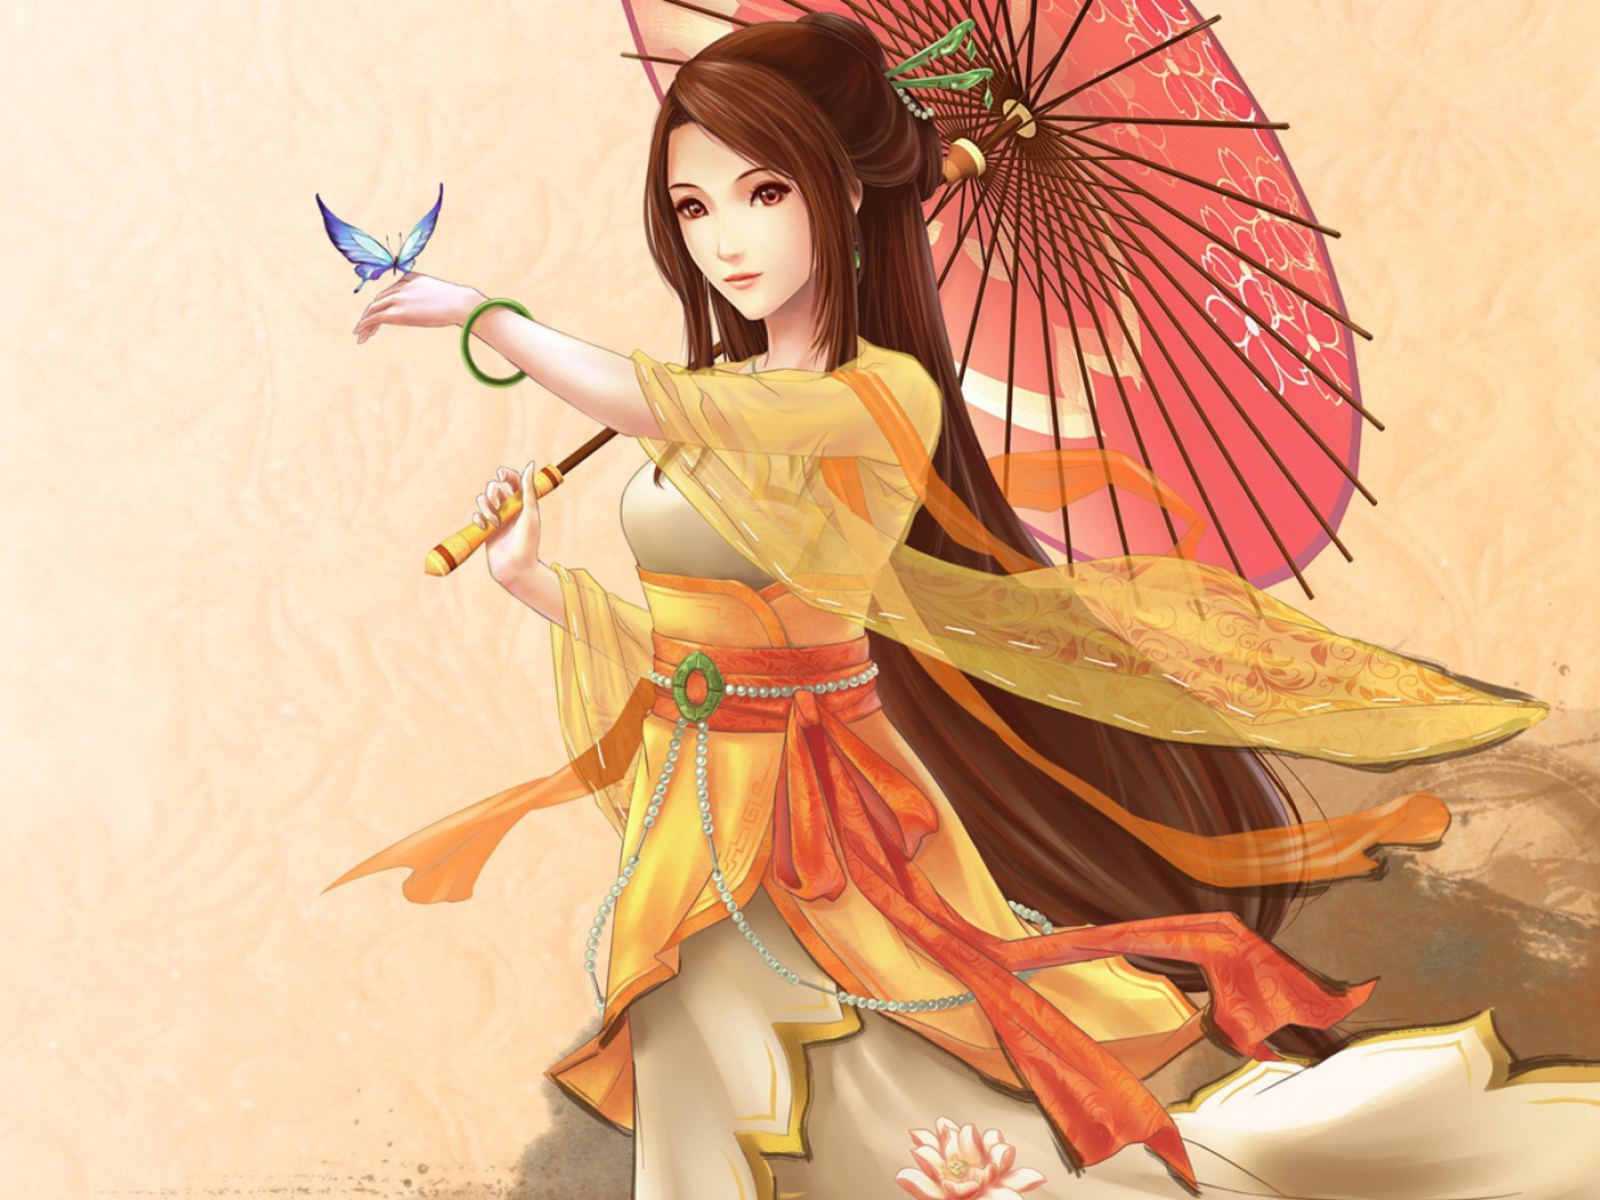 Das Japanese Woman & Butterfly Wallpaper 1600x1200